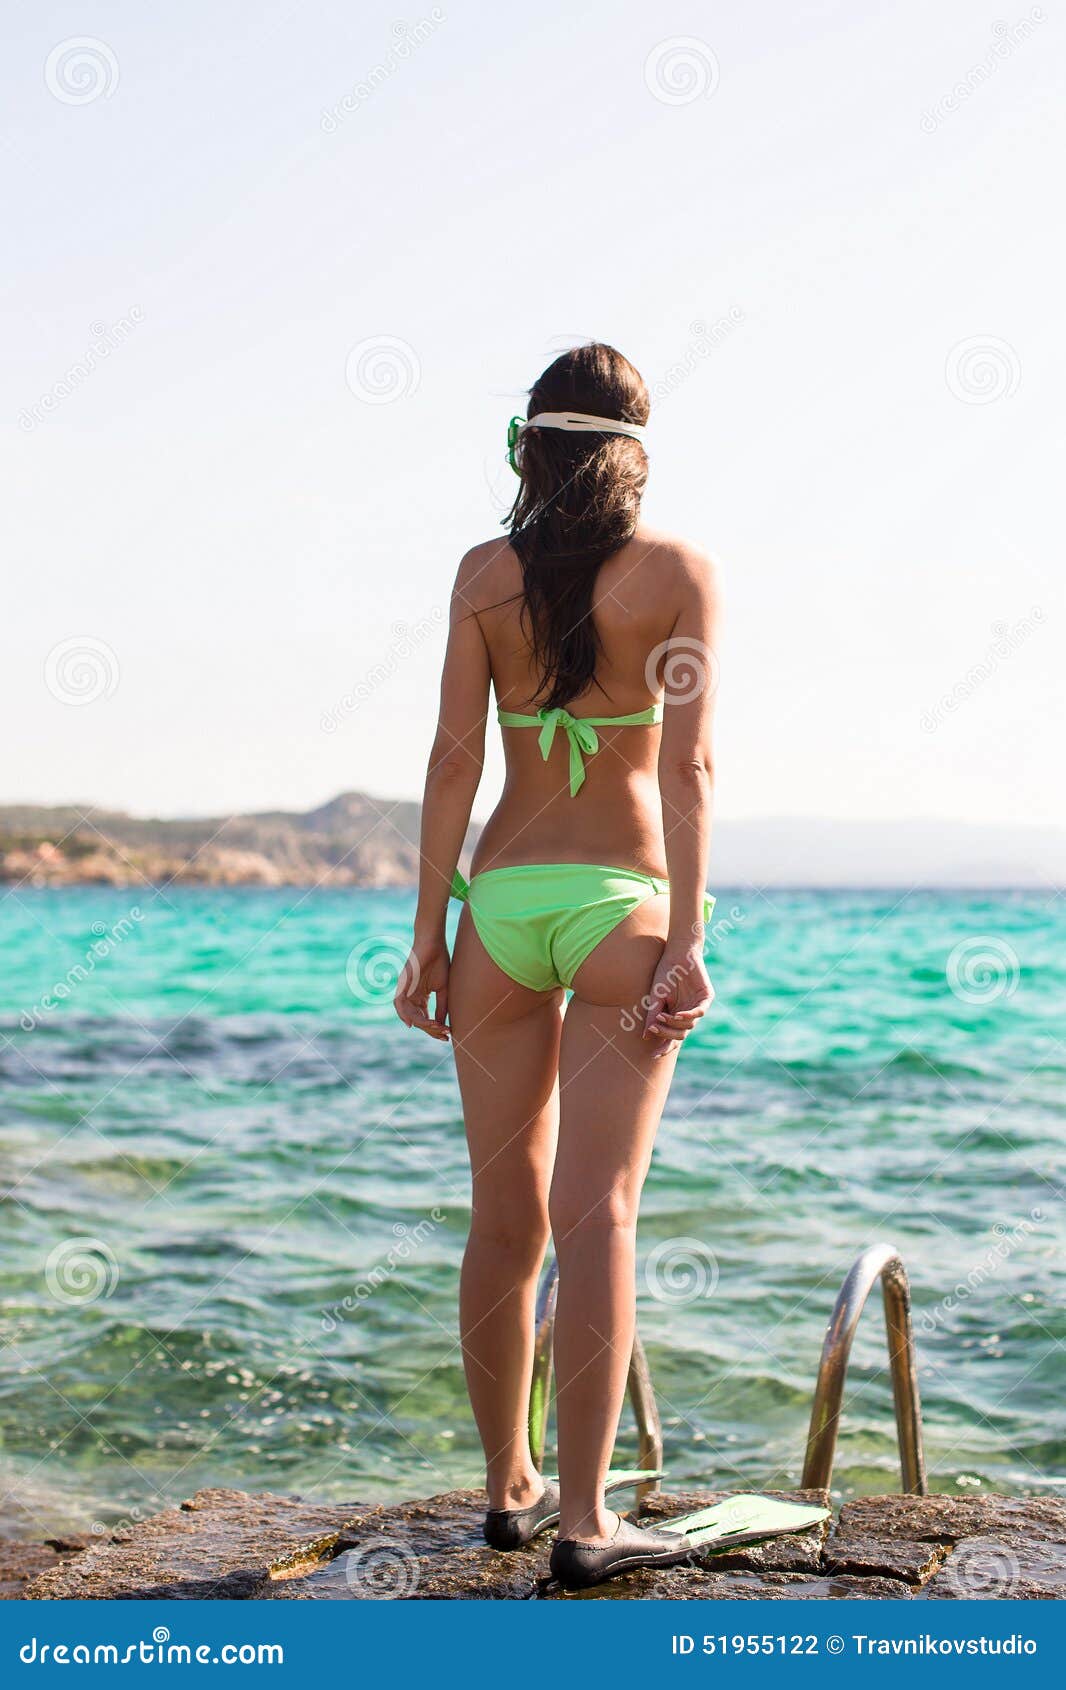 Зеленый купаться. Девушки в купальниках стоят с задним. Молодая женщина в купальнике на набережной. Женщина в купальнике в июне. Женщина в купальнике передом.